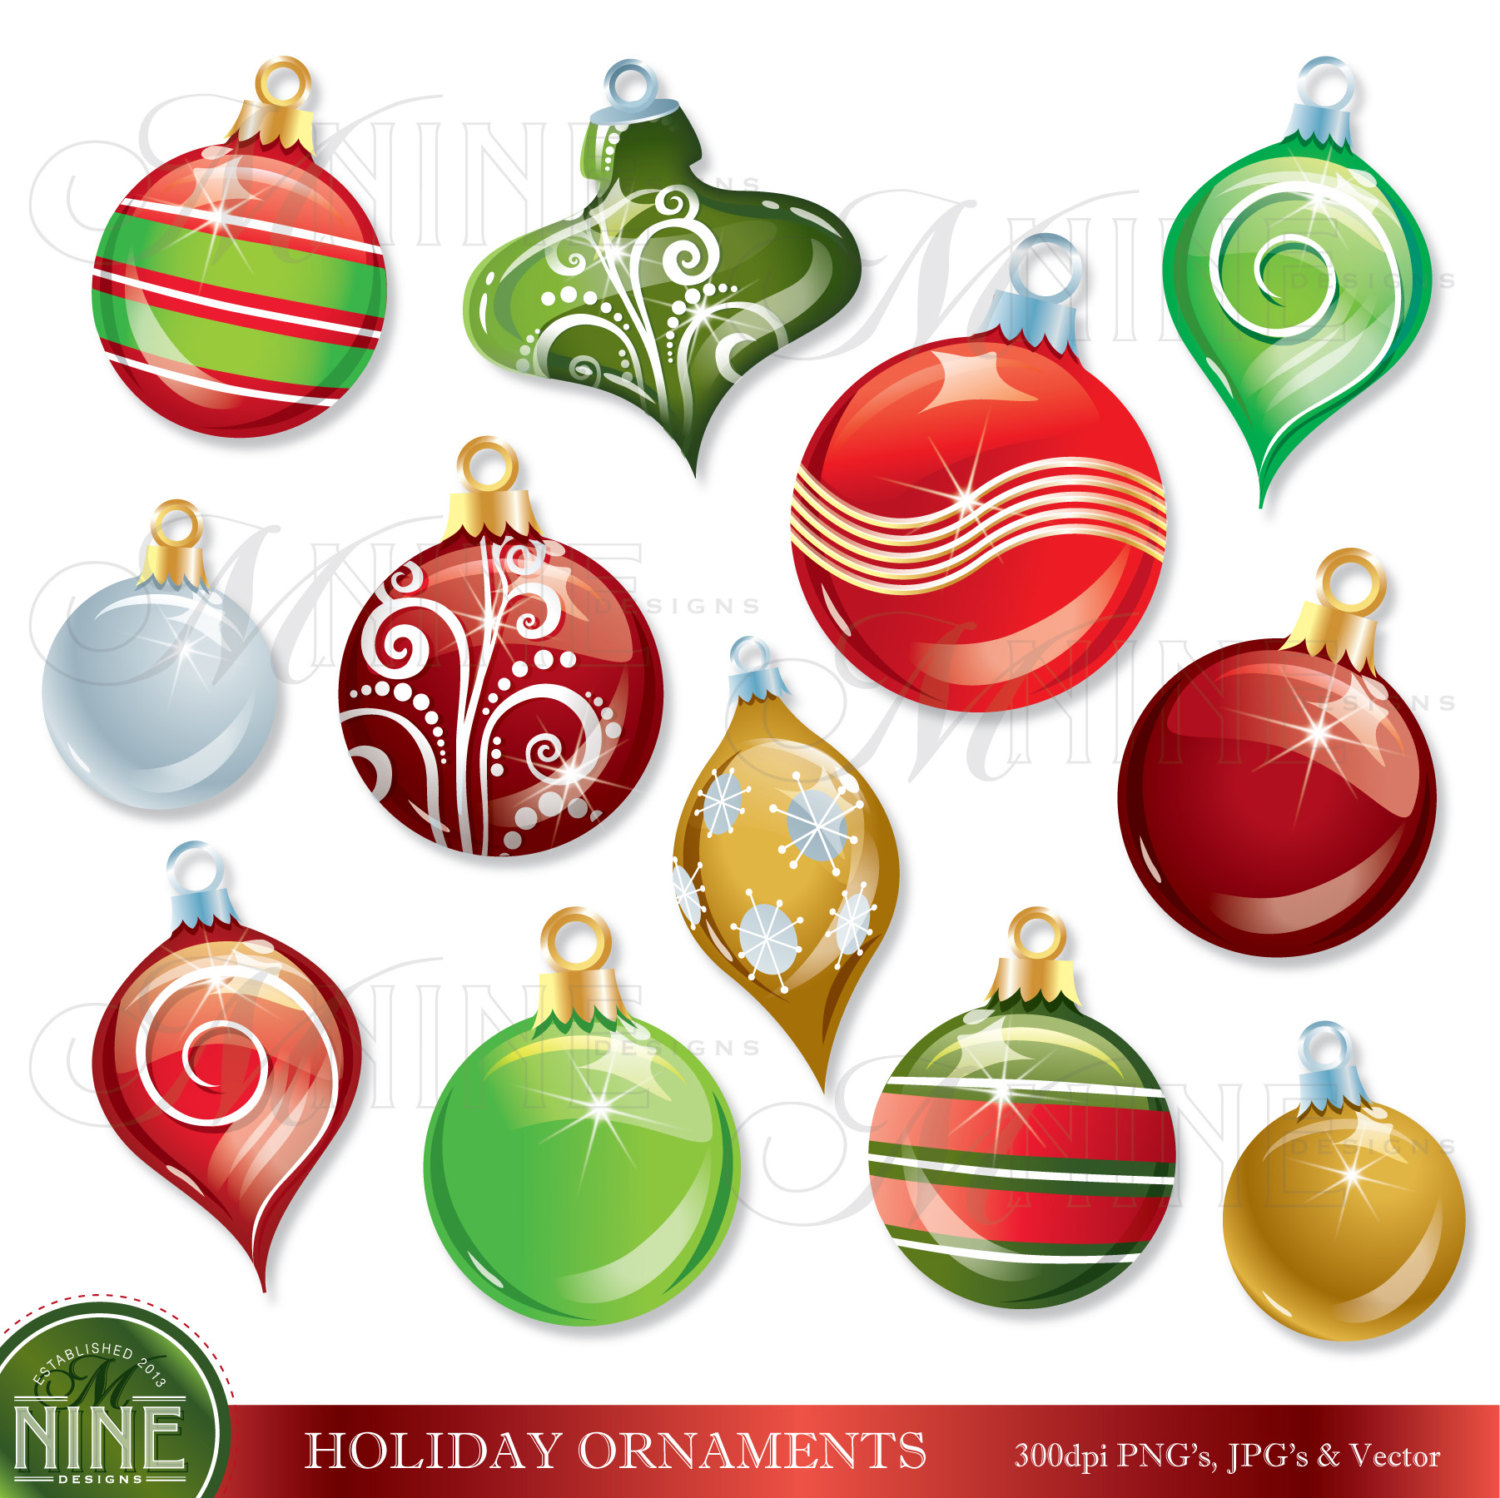 CHRISTMAS ORNAMENTS Clip Art: - Ornaments Clipart